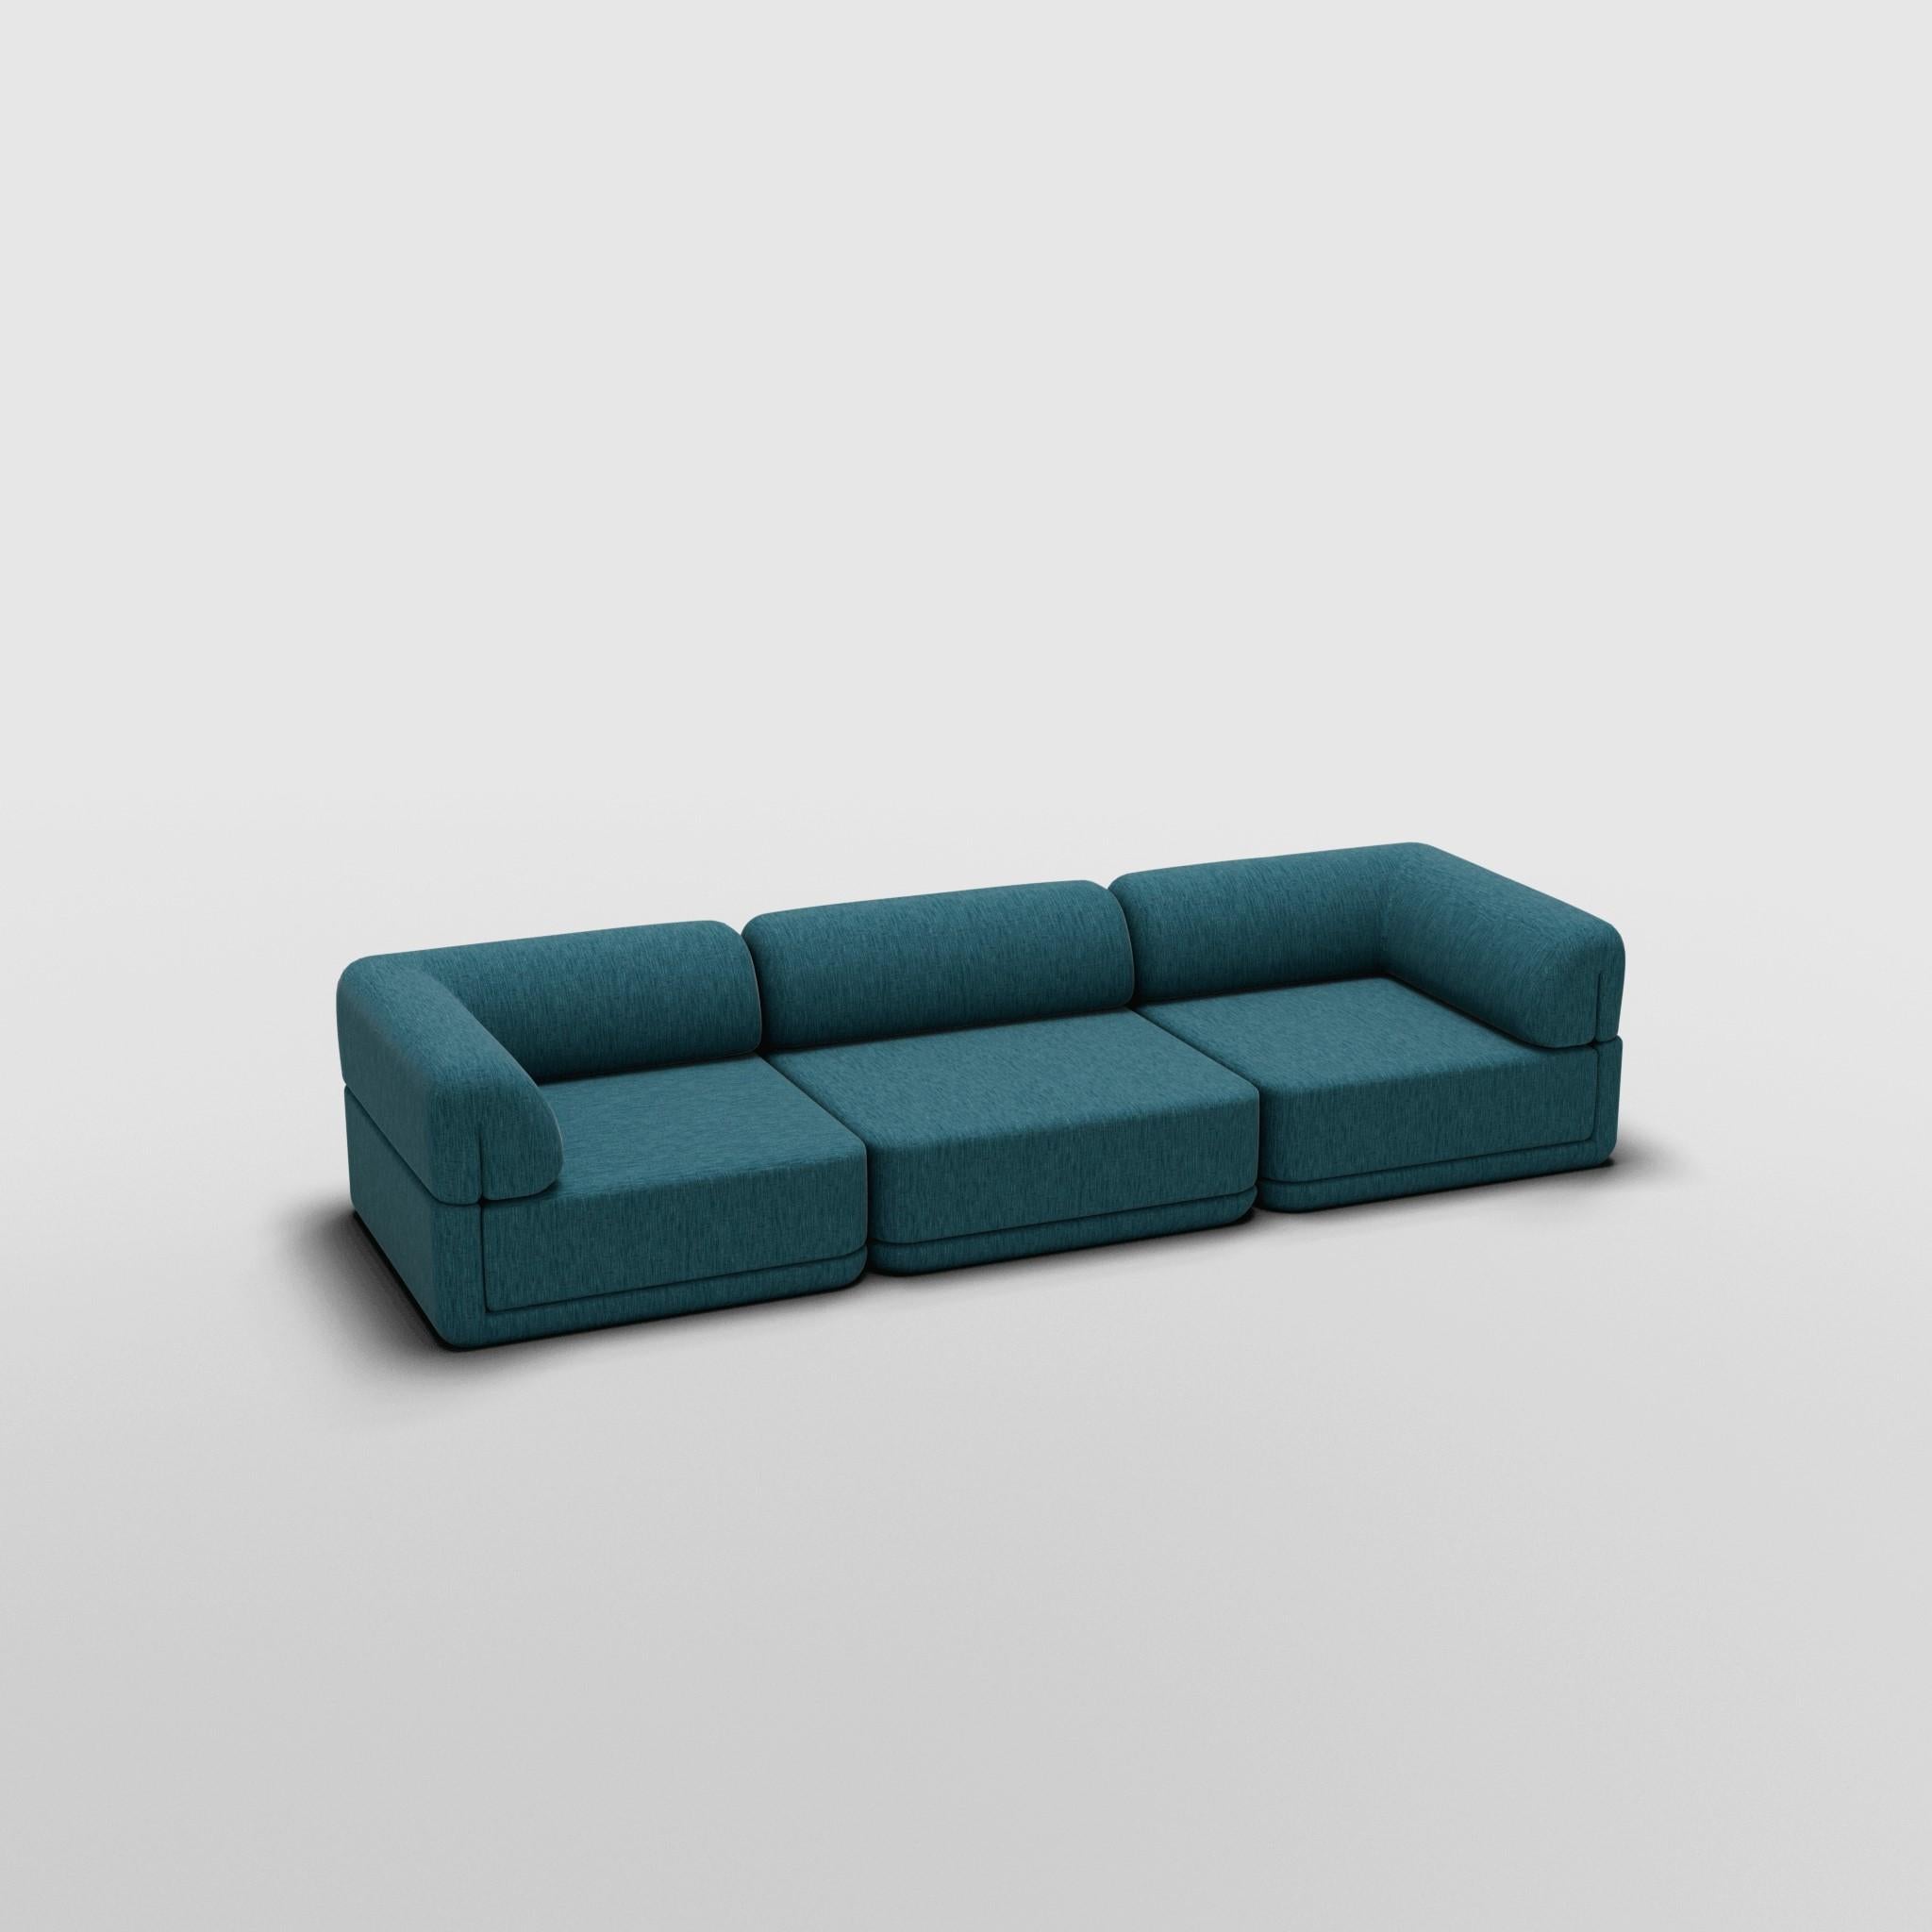 Ensemble canapé-lounge - Inspiré par les meubles de luxe italiens des années 70

Découvrez le canapé Cube, où l'art rencontre l'adaptabilité. Son design sculptural et son confort personnalisable créent des possibilités infinies pour votre espace de